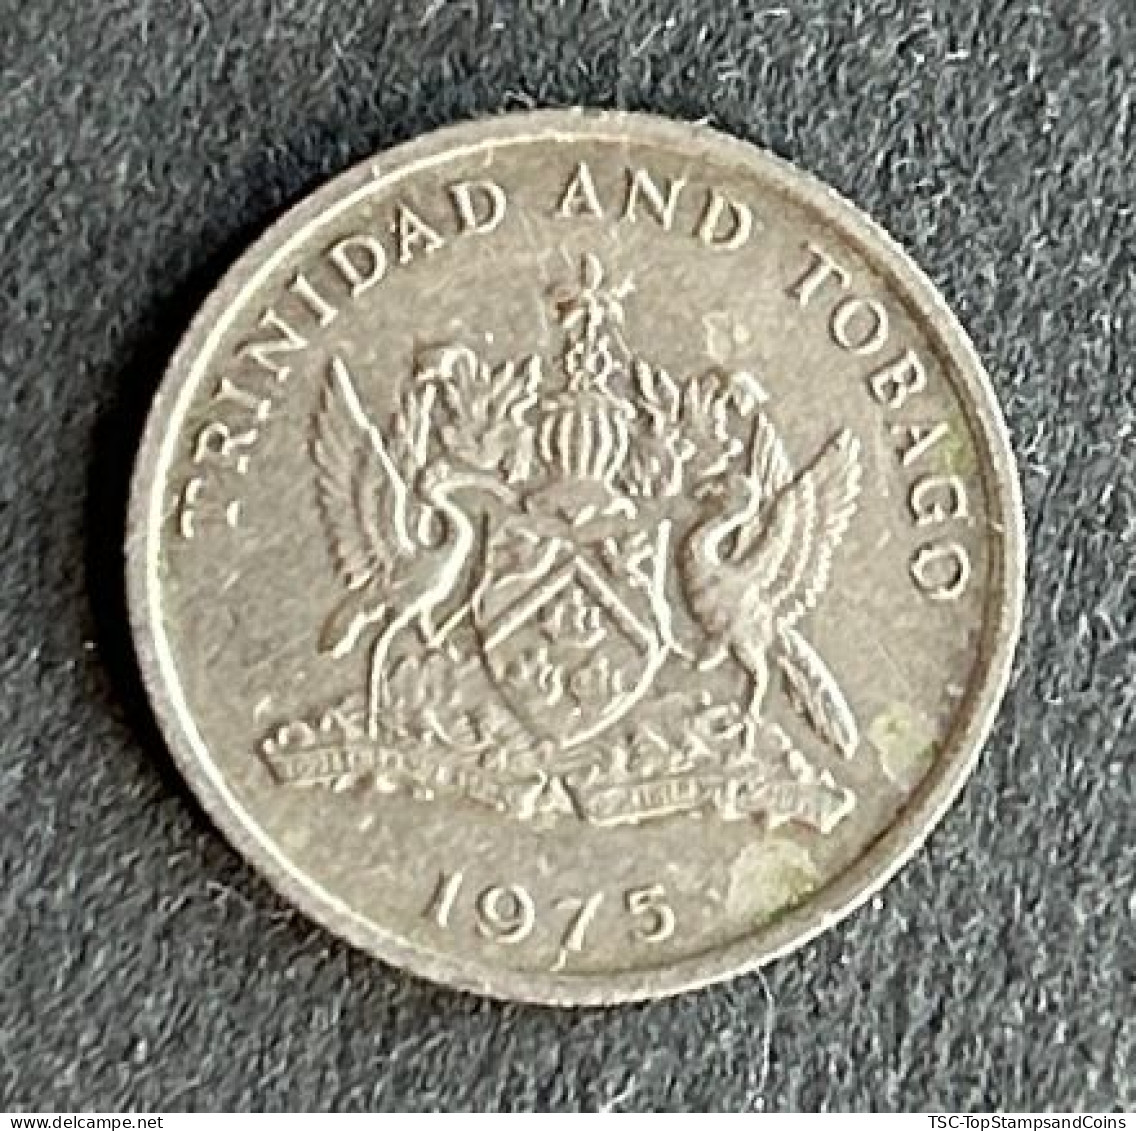 $$T&B500 - Elizabeth II Coat Of Arms / Flaming Hibiscus - 10 Cents Coin - Trinidad & Tobago - 1975 - Trinidad & Tobago